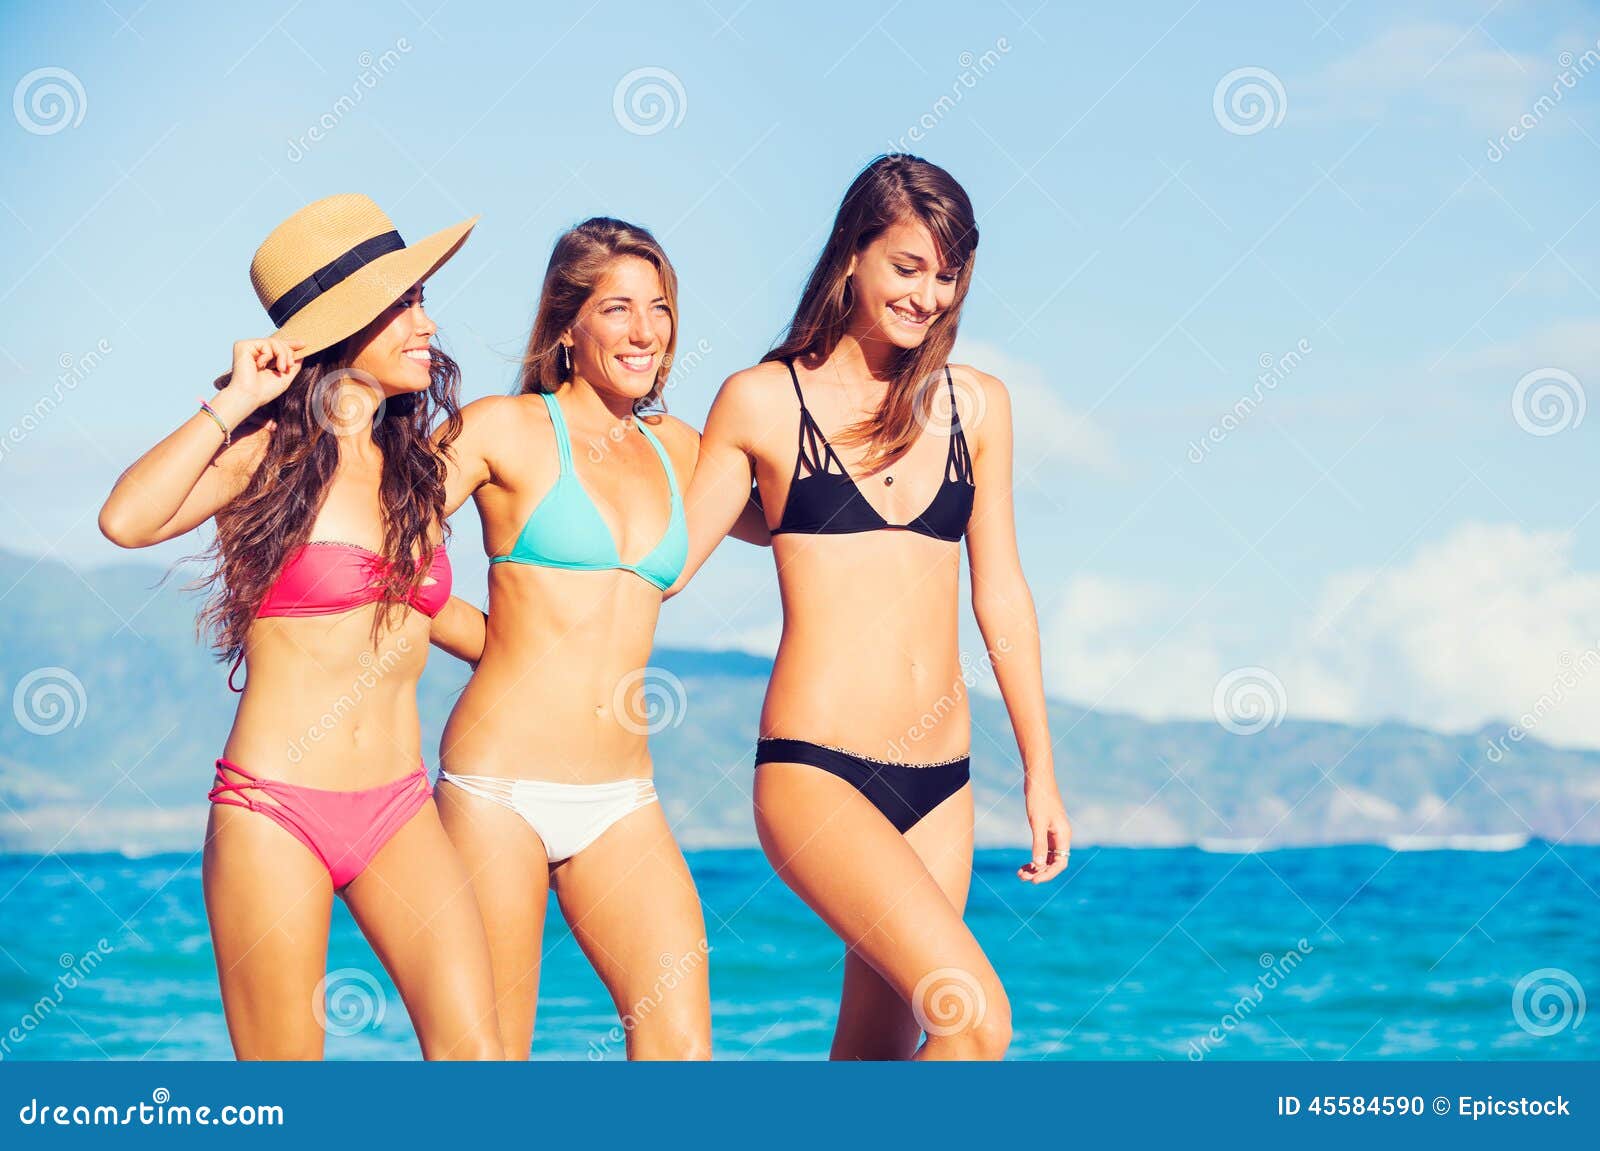 Да здравствует лето! Винтажные фото знаменитых красавиц на пляже